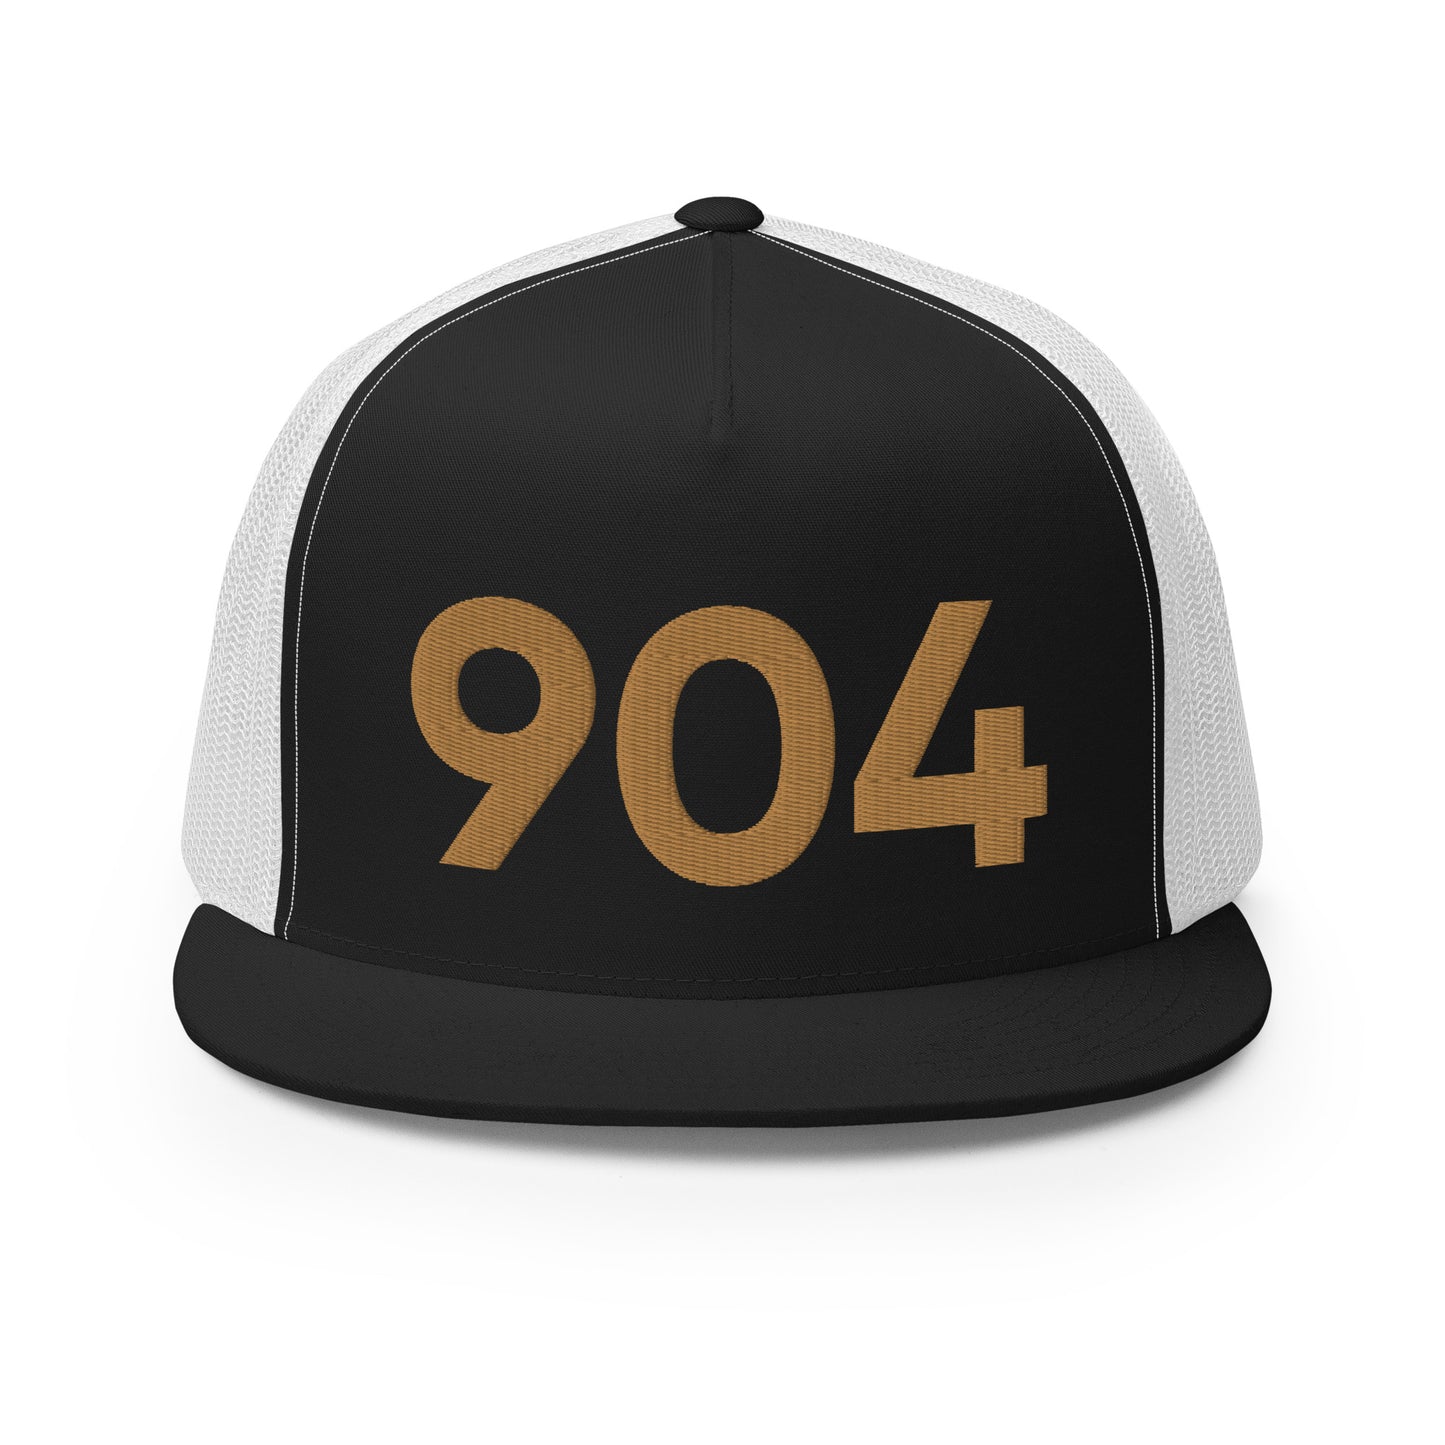 904 Jacksonville Strong Trucker Hat